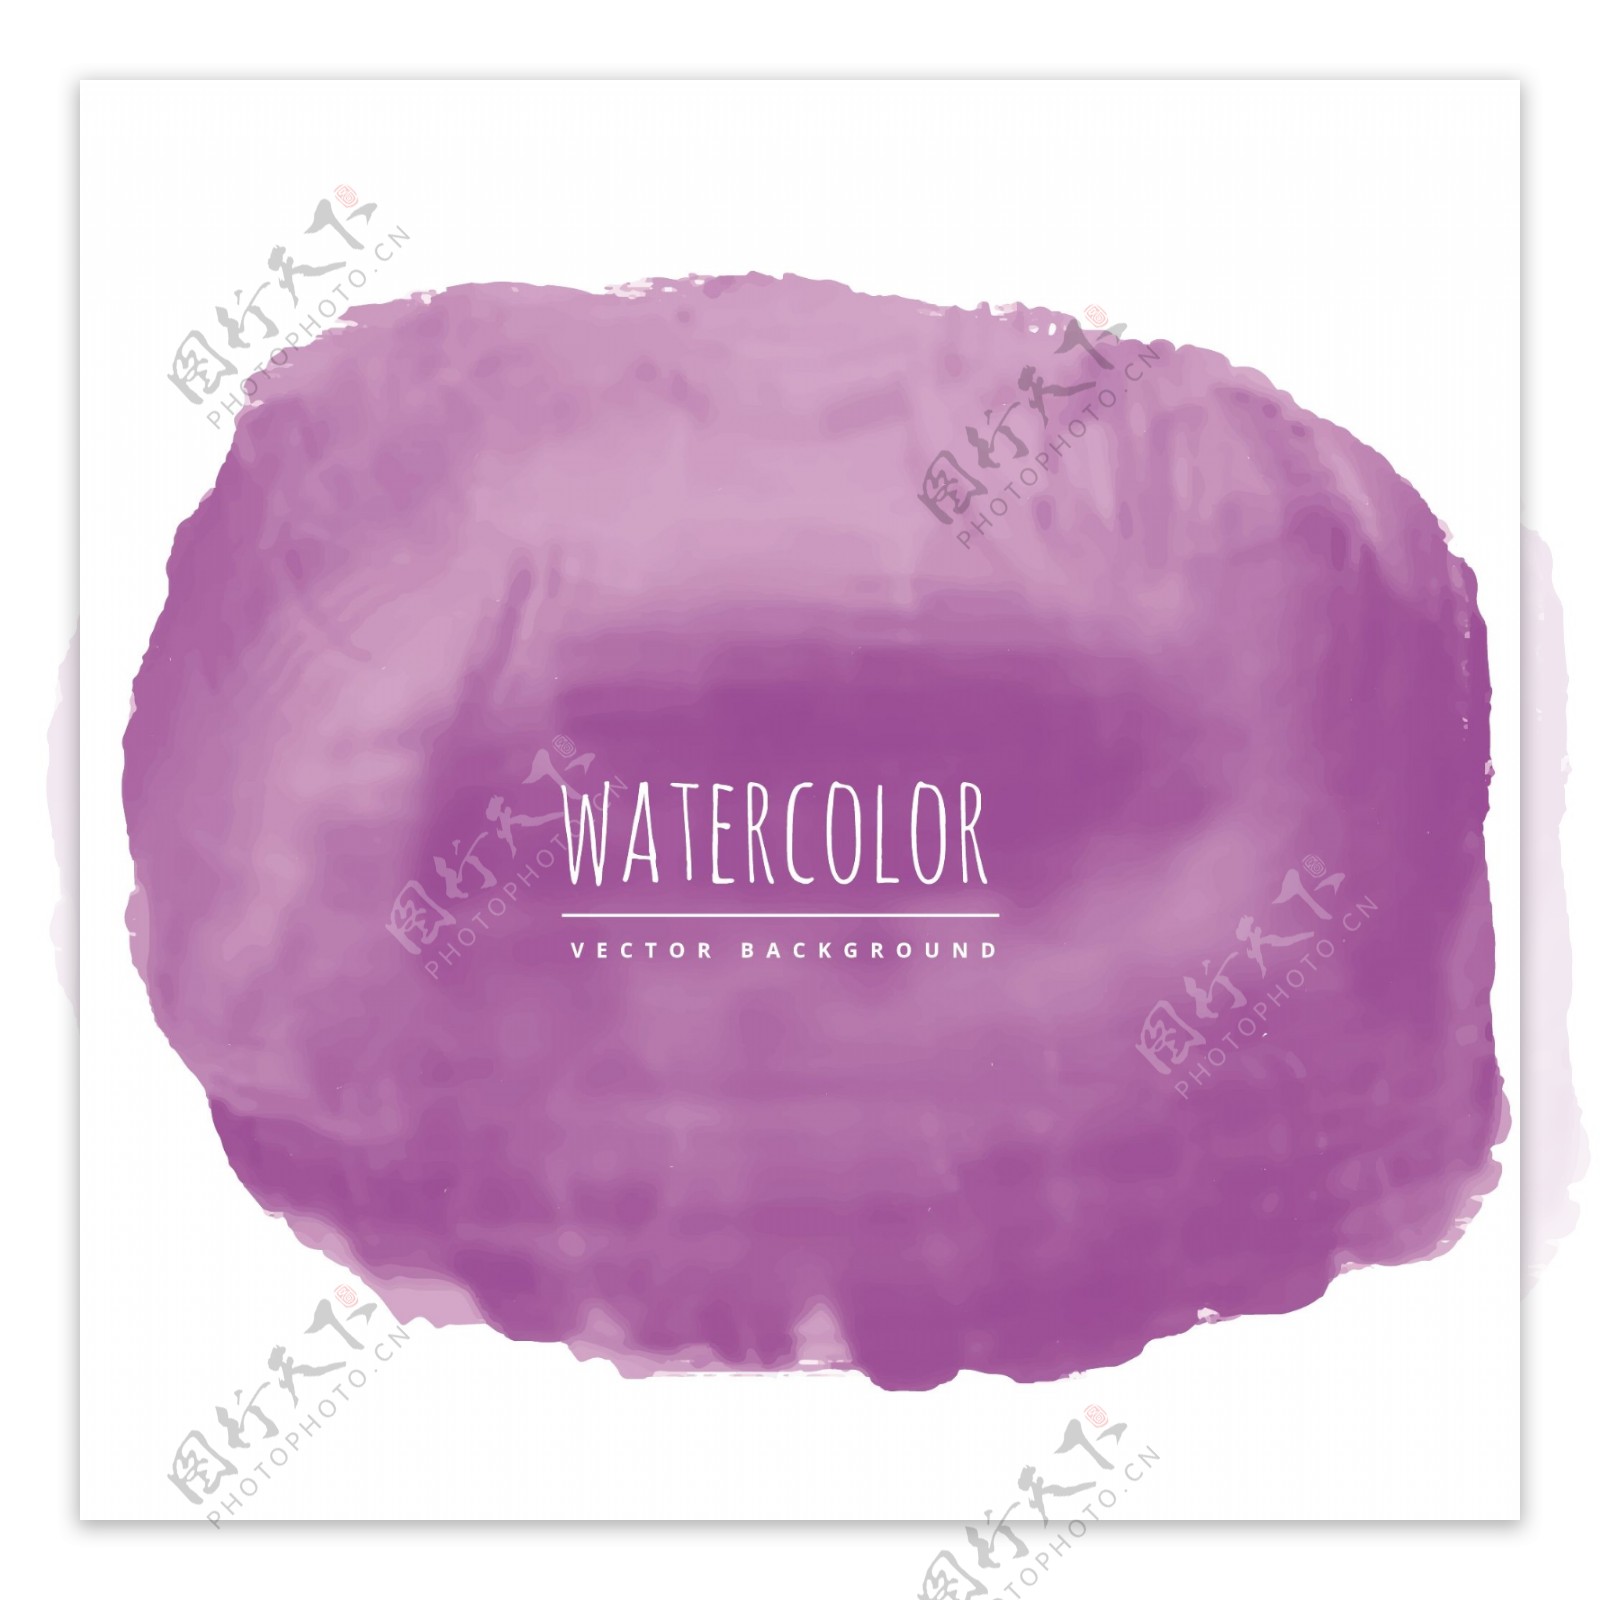 圆形紫色水彩背景矢量素材